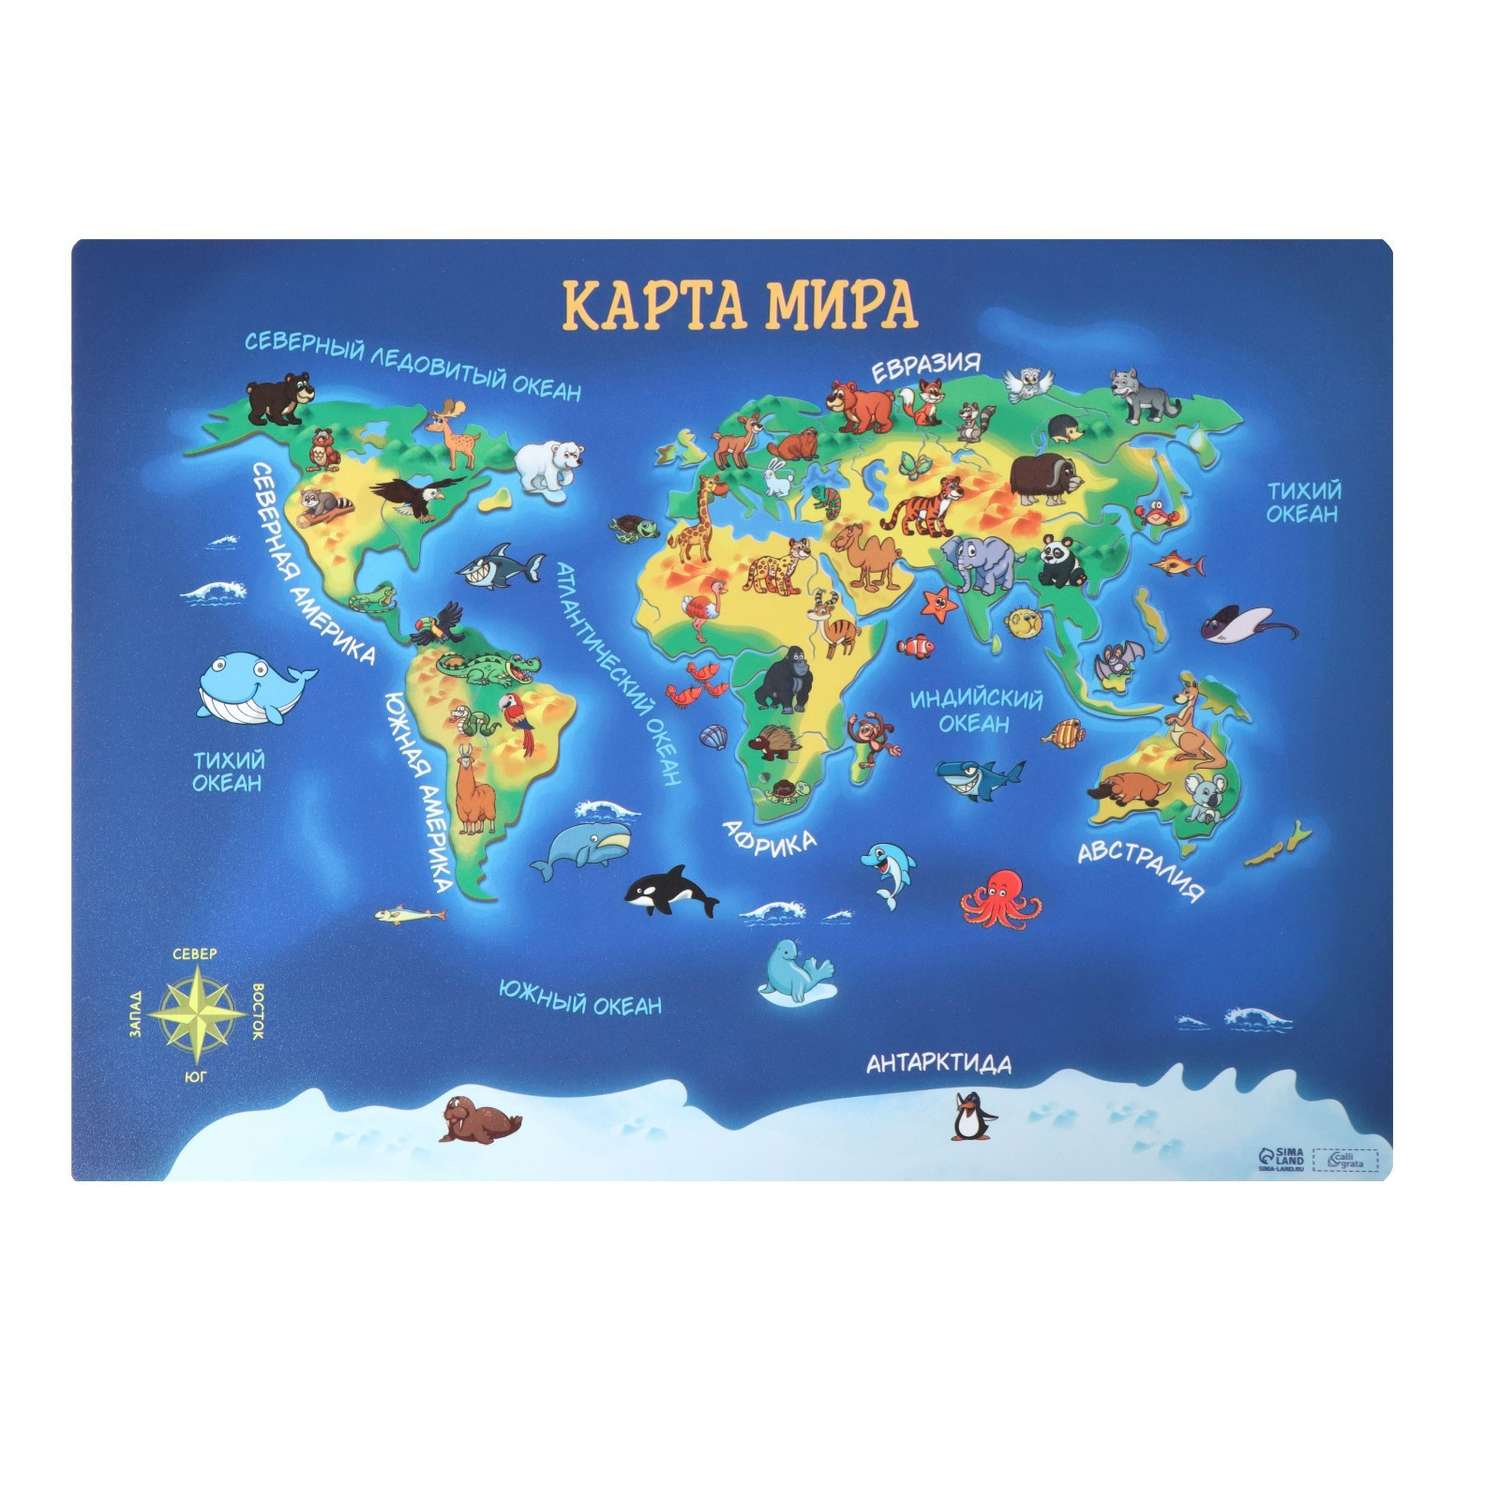 Накладка на стол Calligrata пластиковая А4 336 x 250 мм «Карта мира» 500 мкм обучающая - фото 2